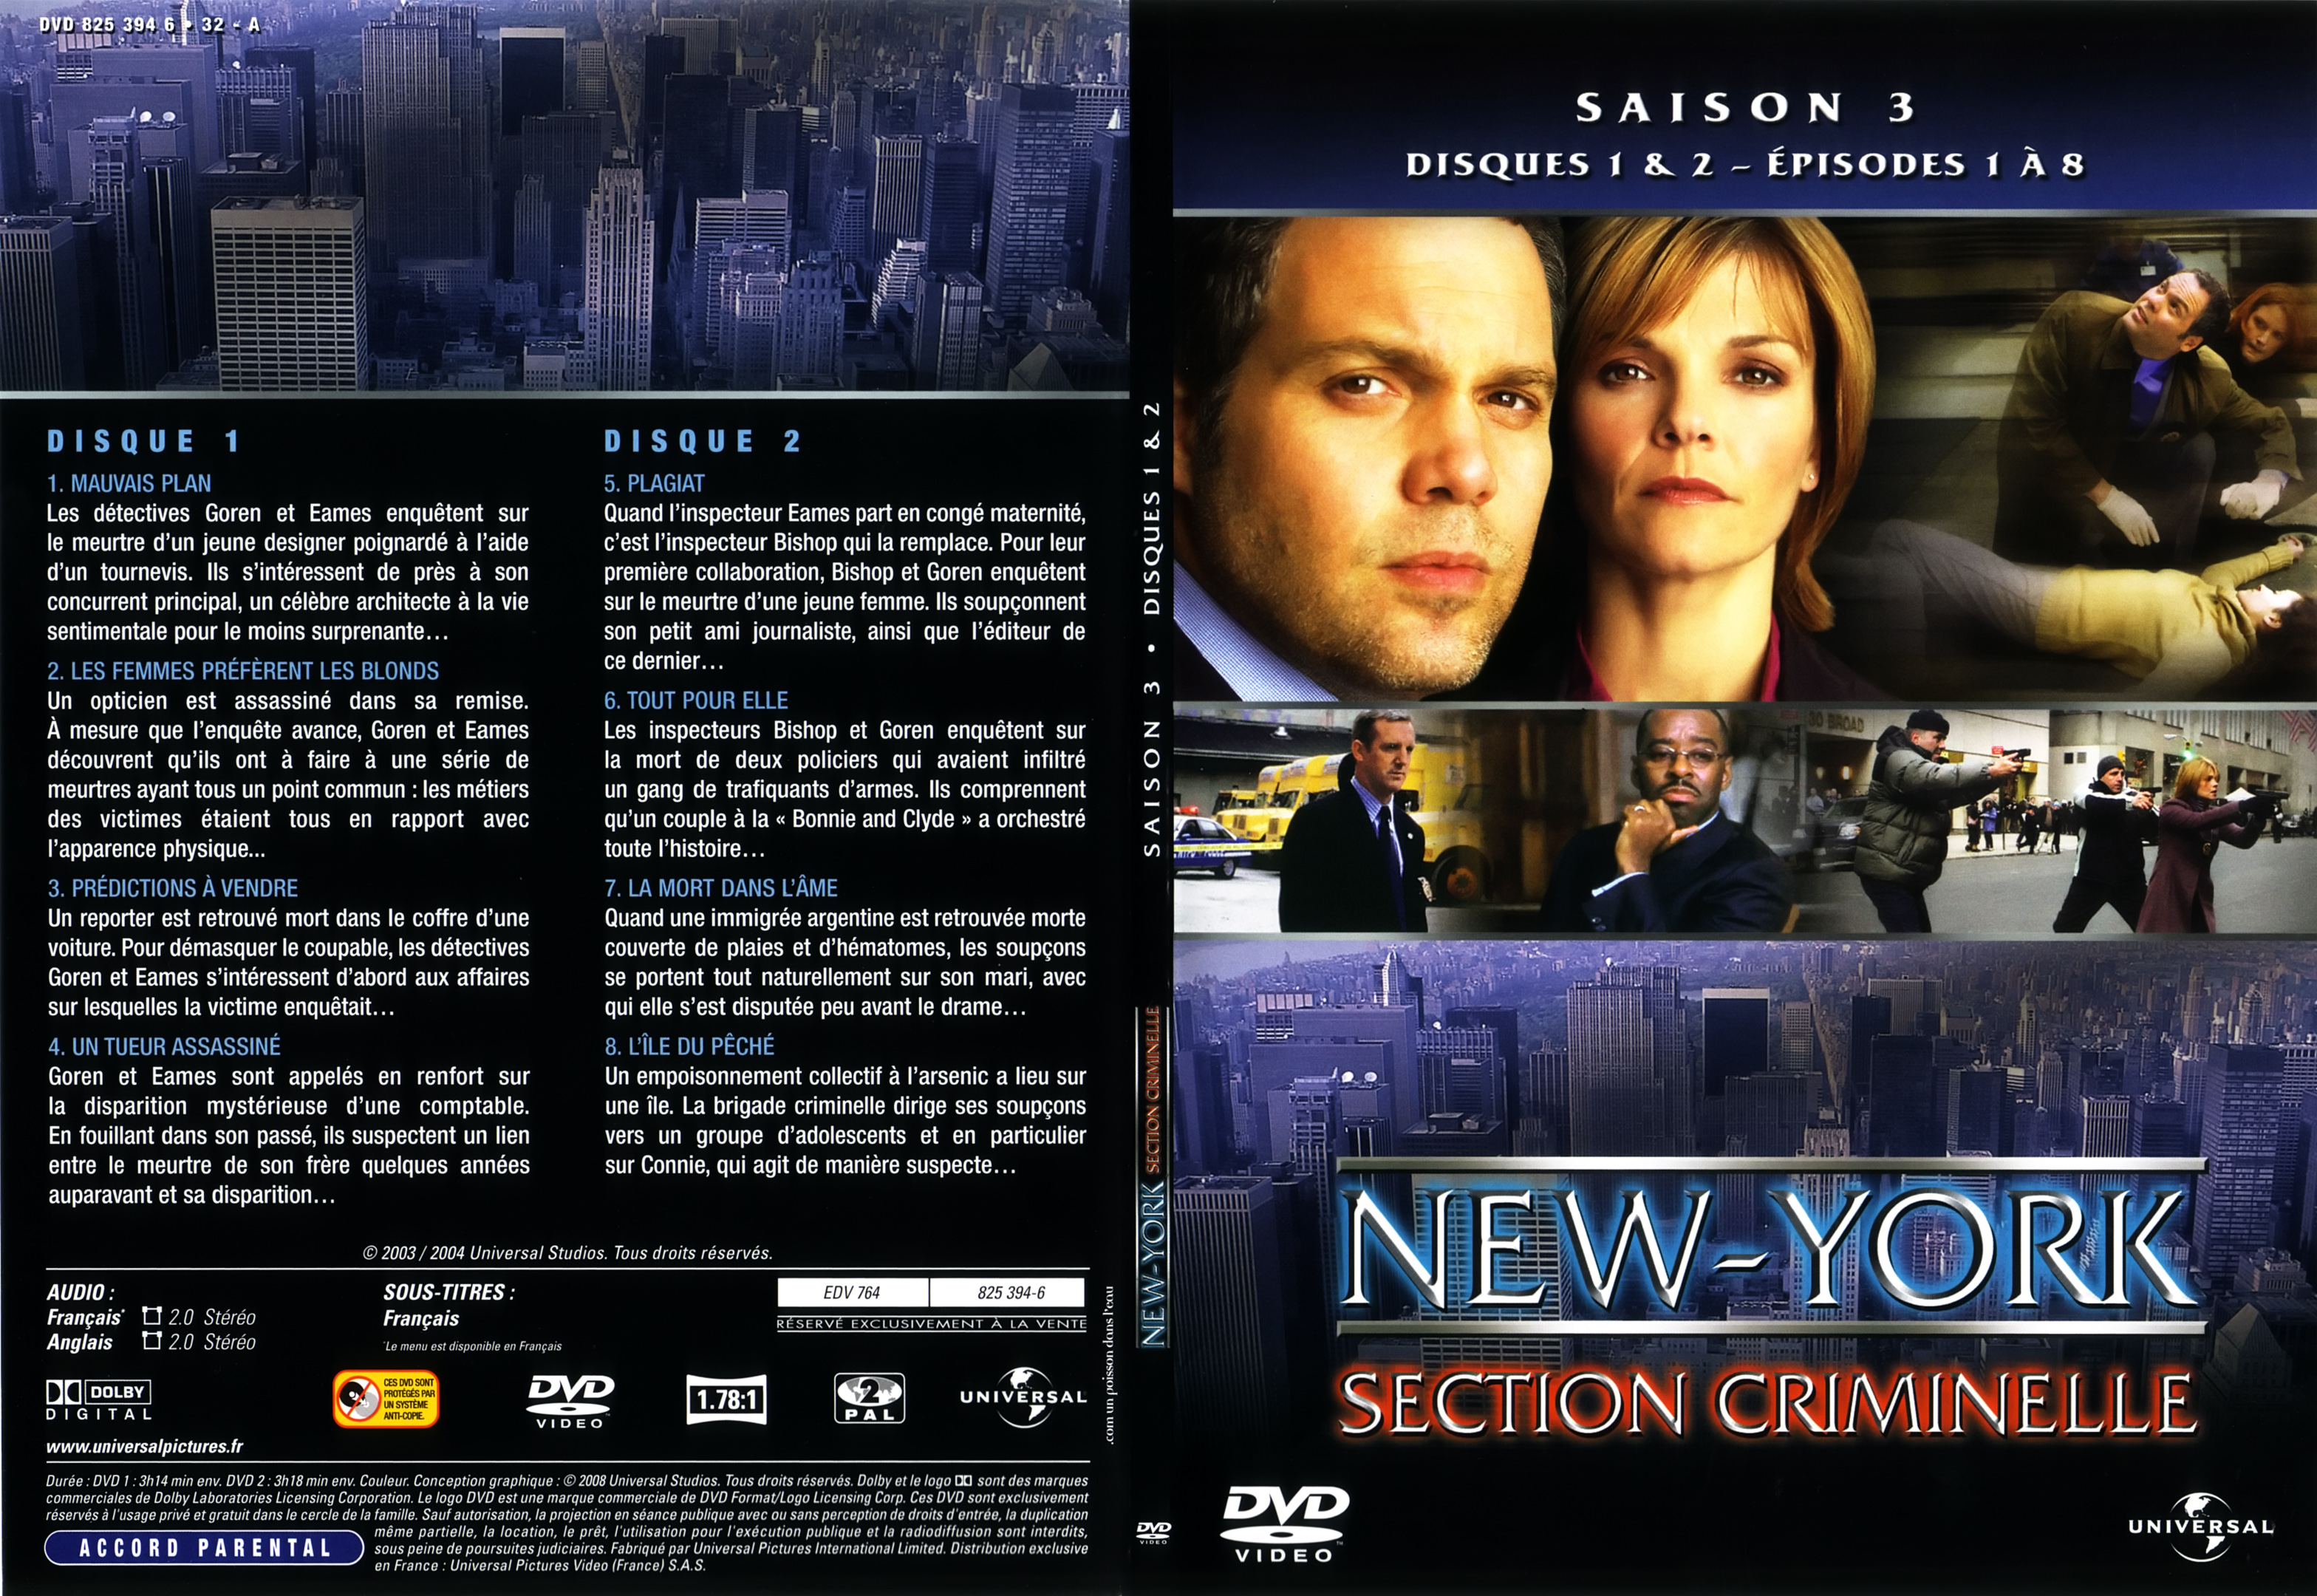 Jaquette DVD New York section criminelle saison 3 DVD 1